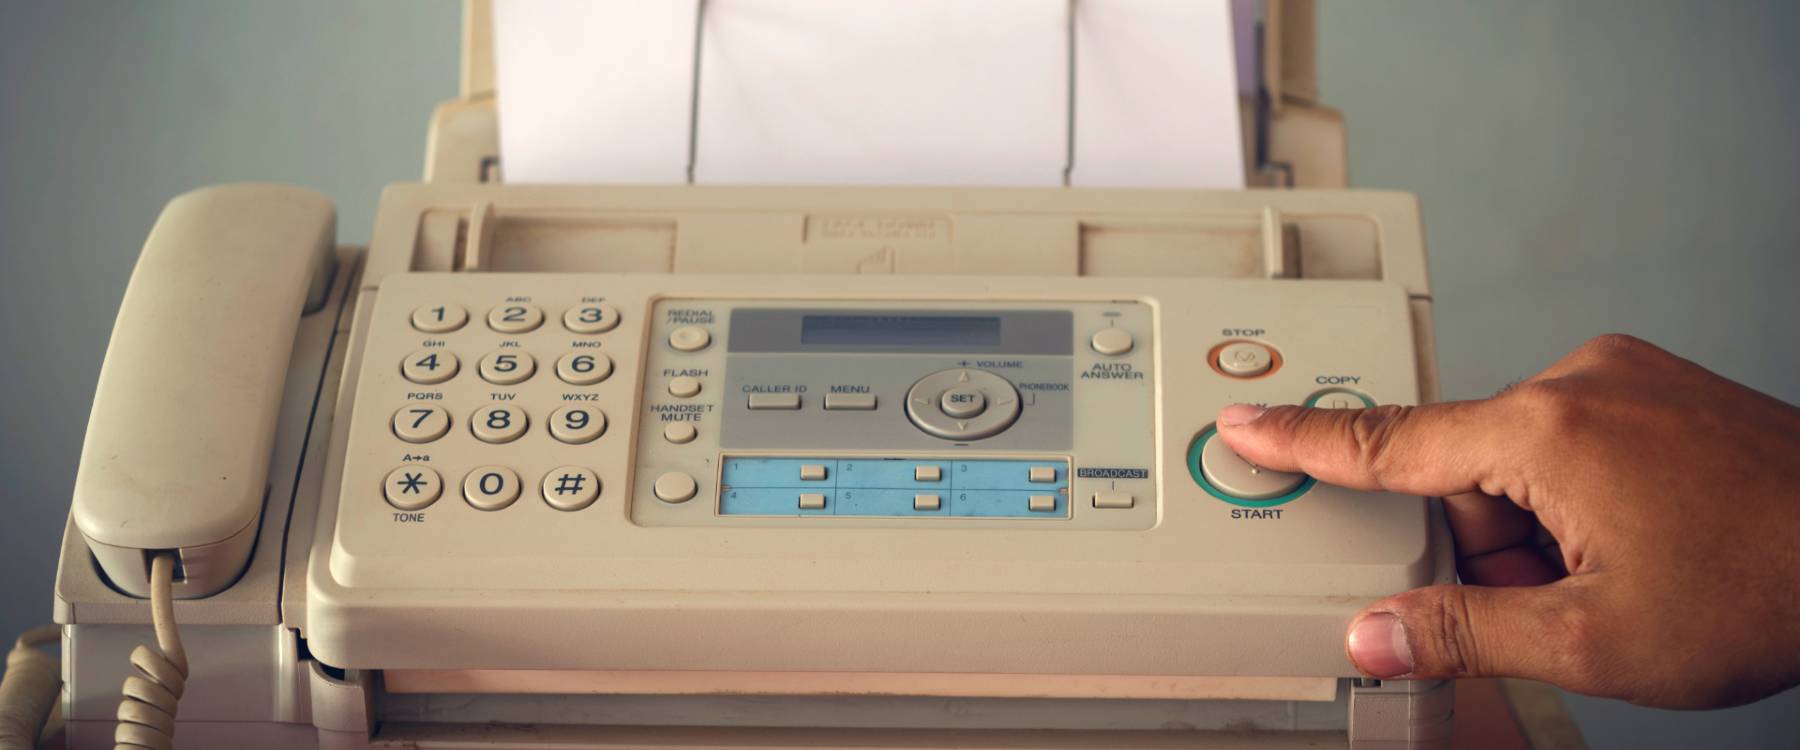 A fax machine